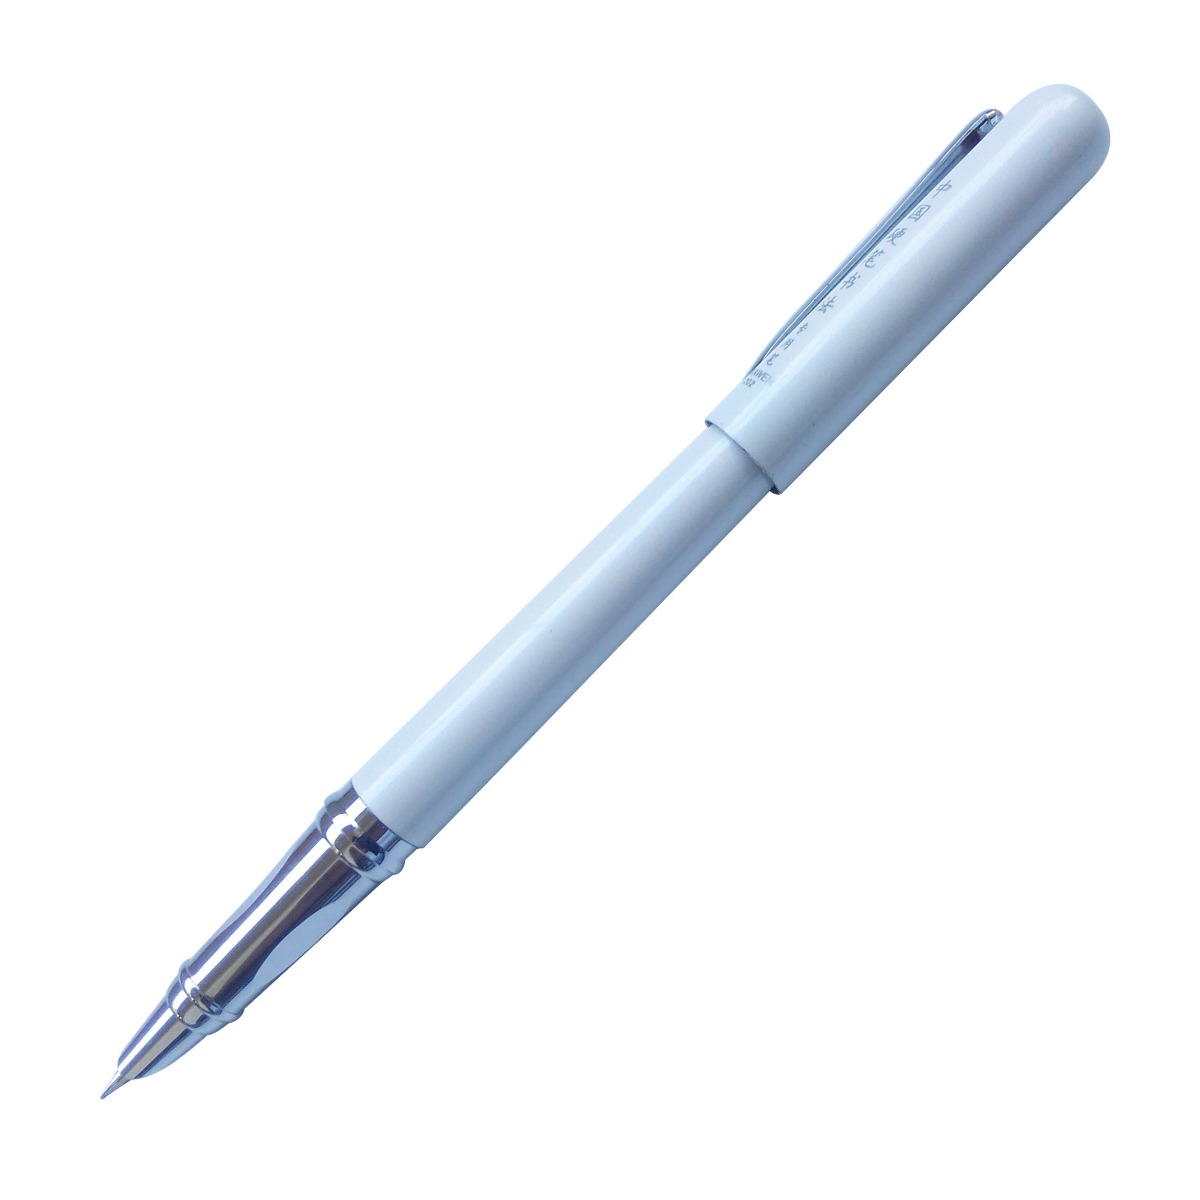 Dikawen Model ; 10964 White Color Body  with Silver Clip Fine Nib  Fountain Pen